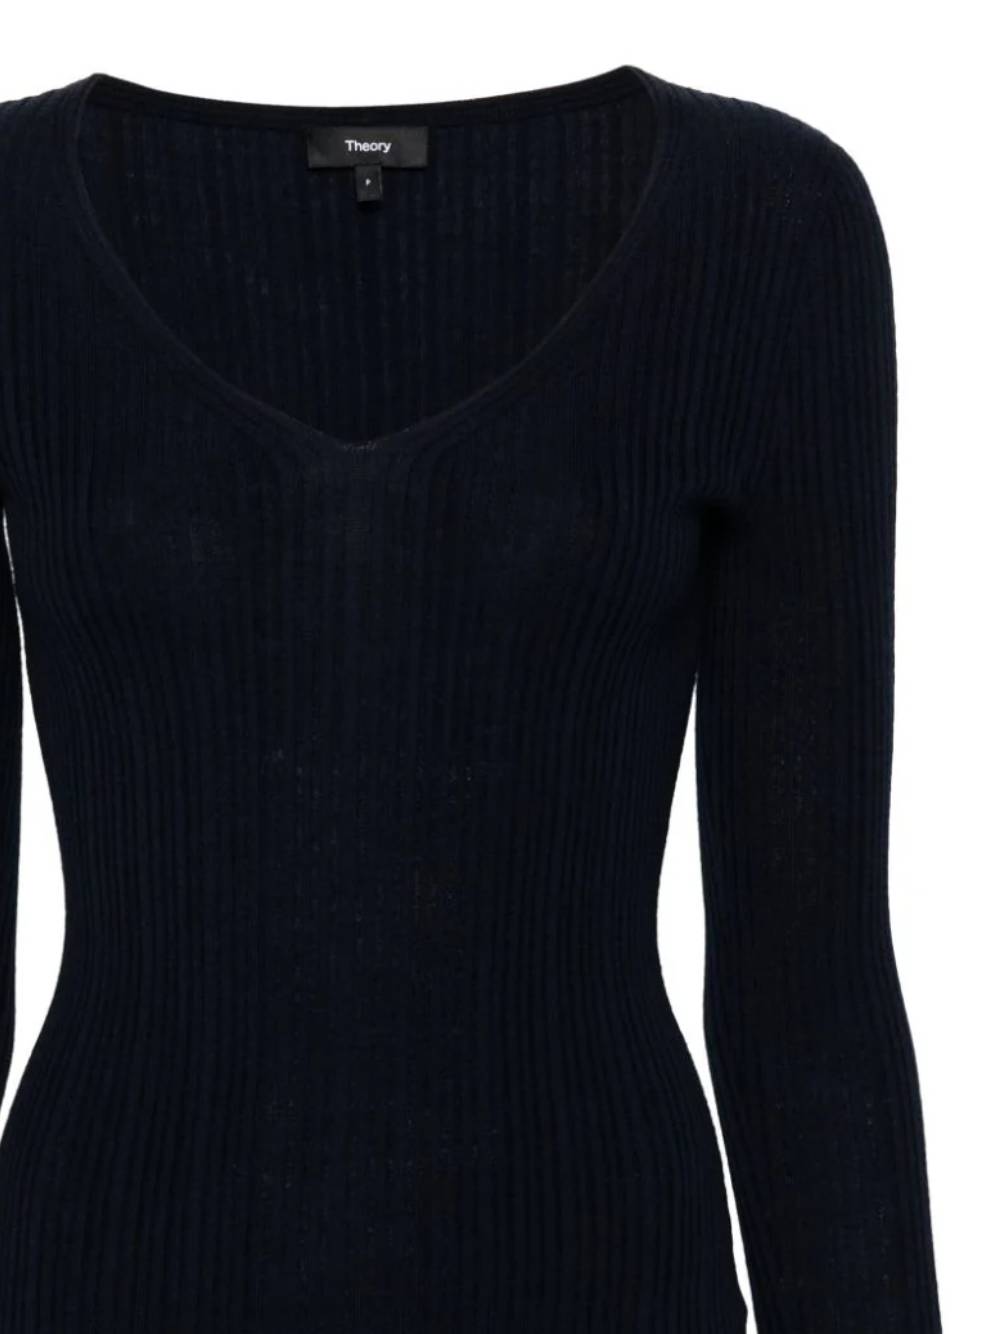 Theory N1216712 Woman  Sweaters - Zuklat